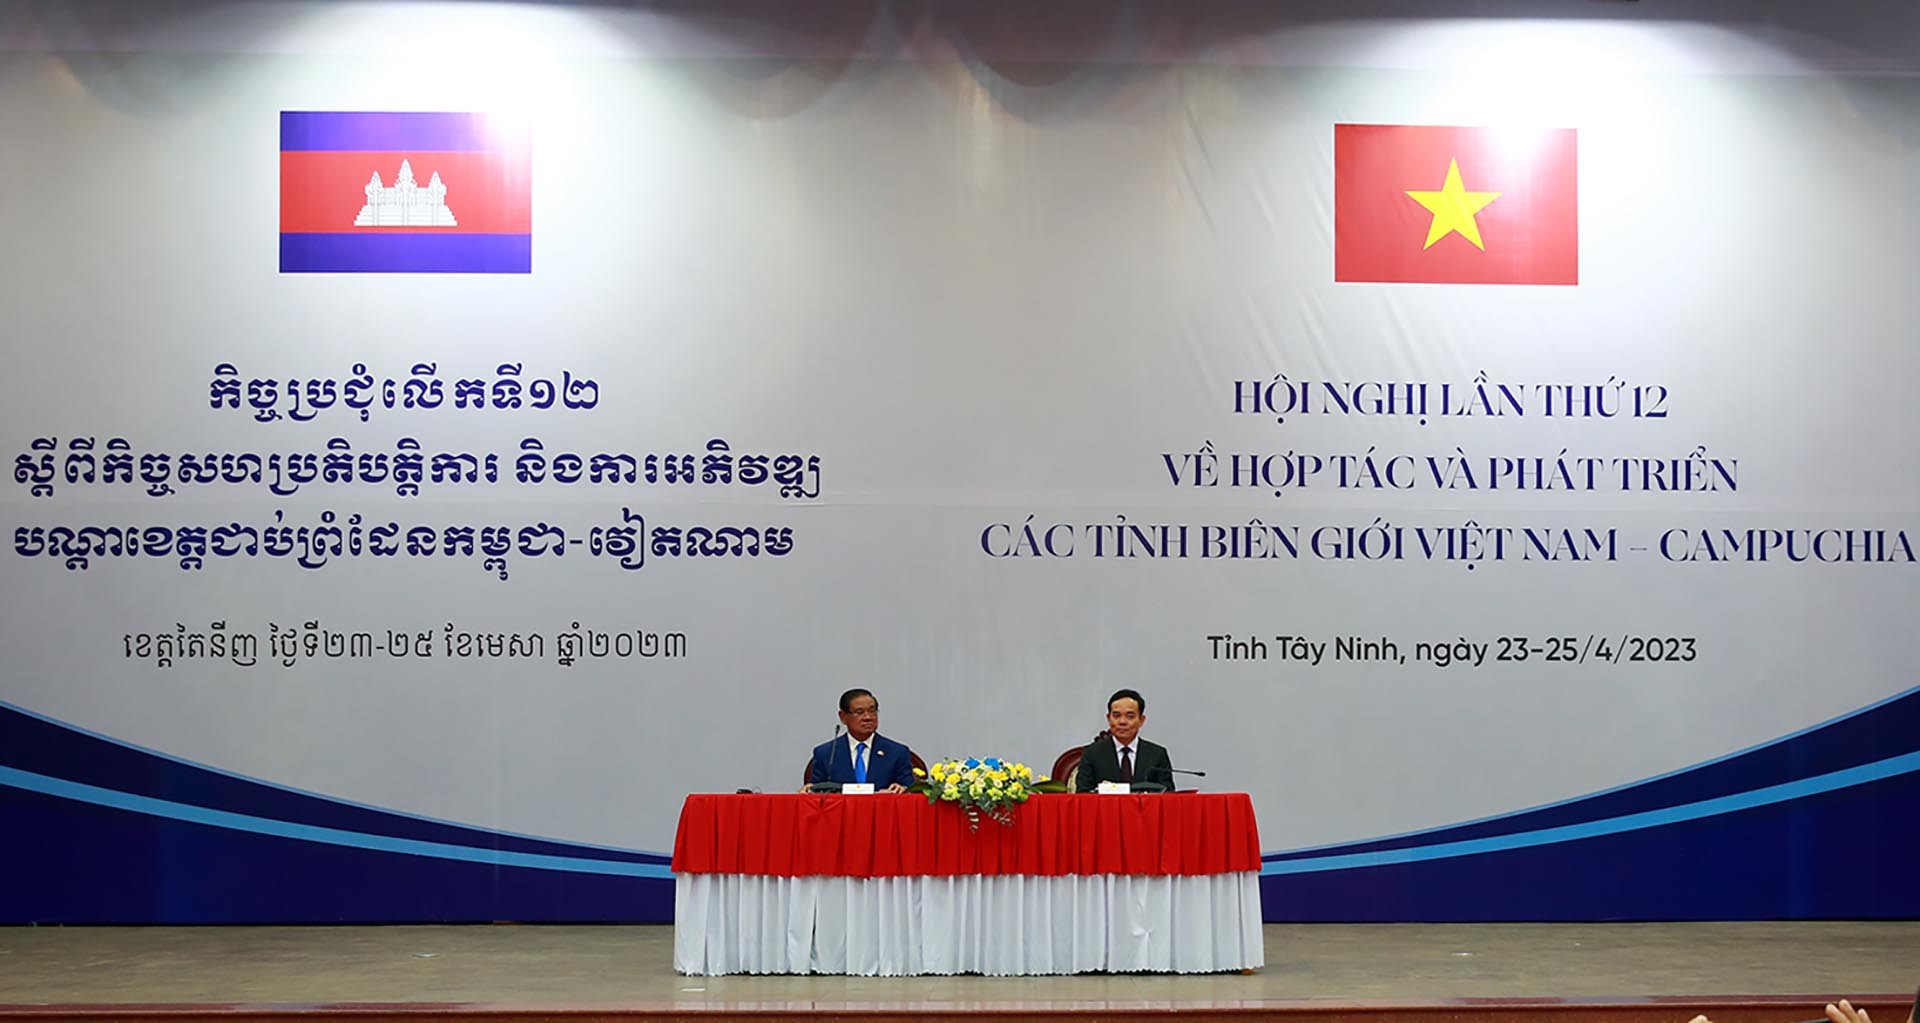 Hội nghị hợp tác và phát triển các tỉnh biên giới Việt Nam-Campuchia lần thứ 12